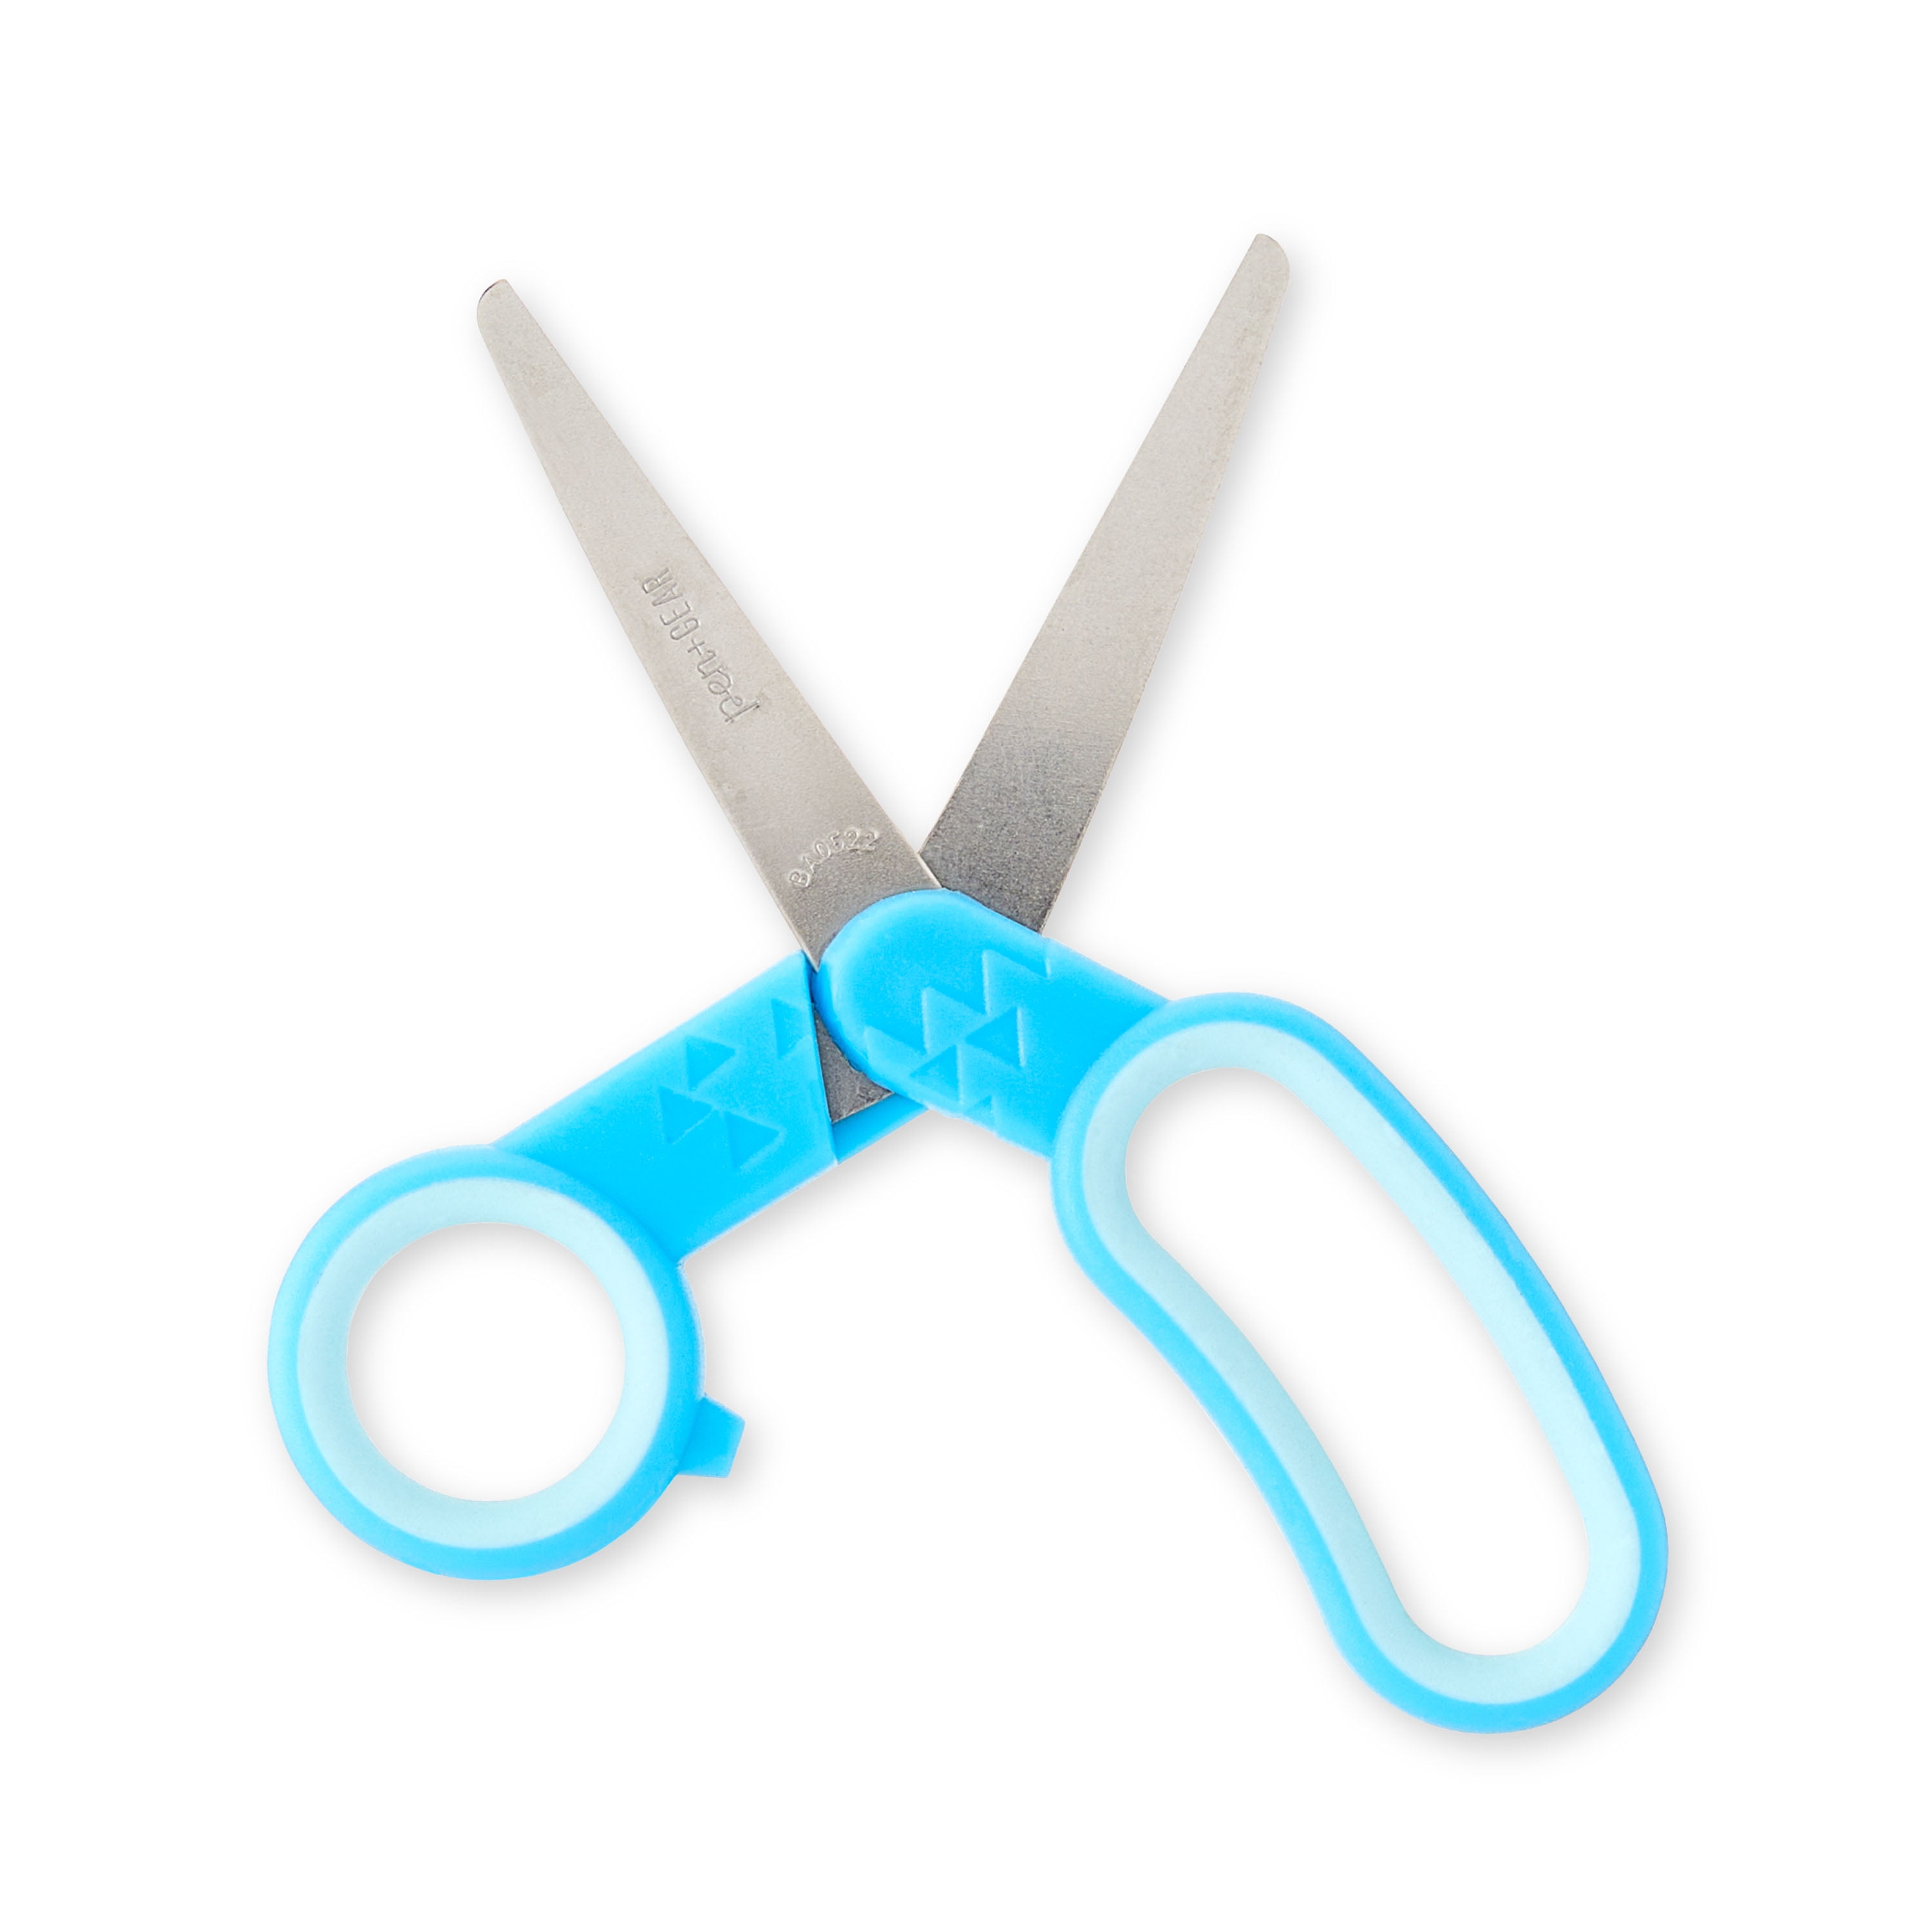  Scissors Bulk for Kids, EZZGOL 96 PACK 5” Safety Blunt